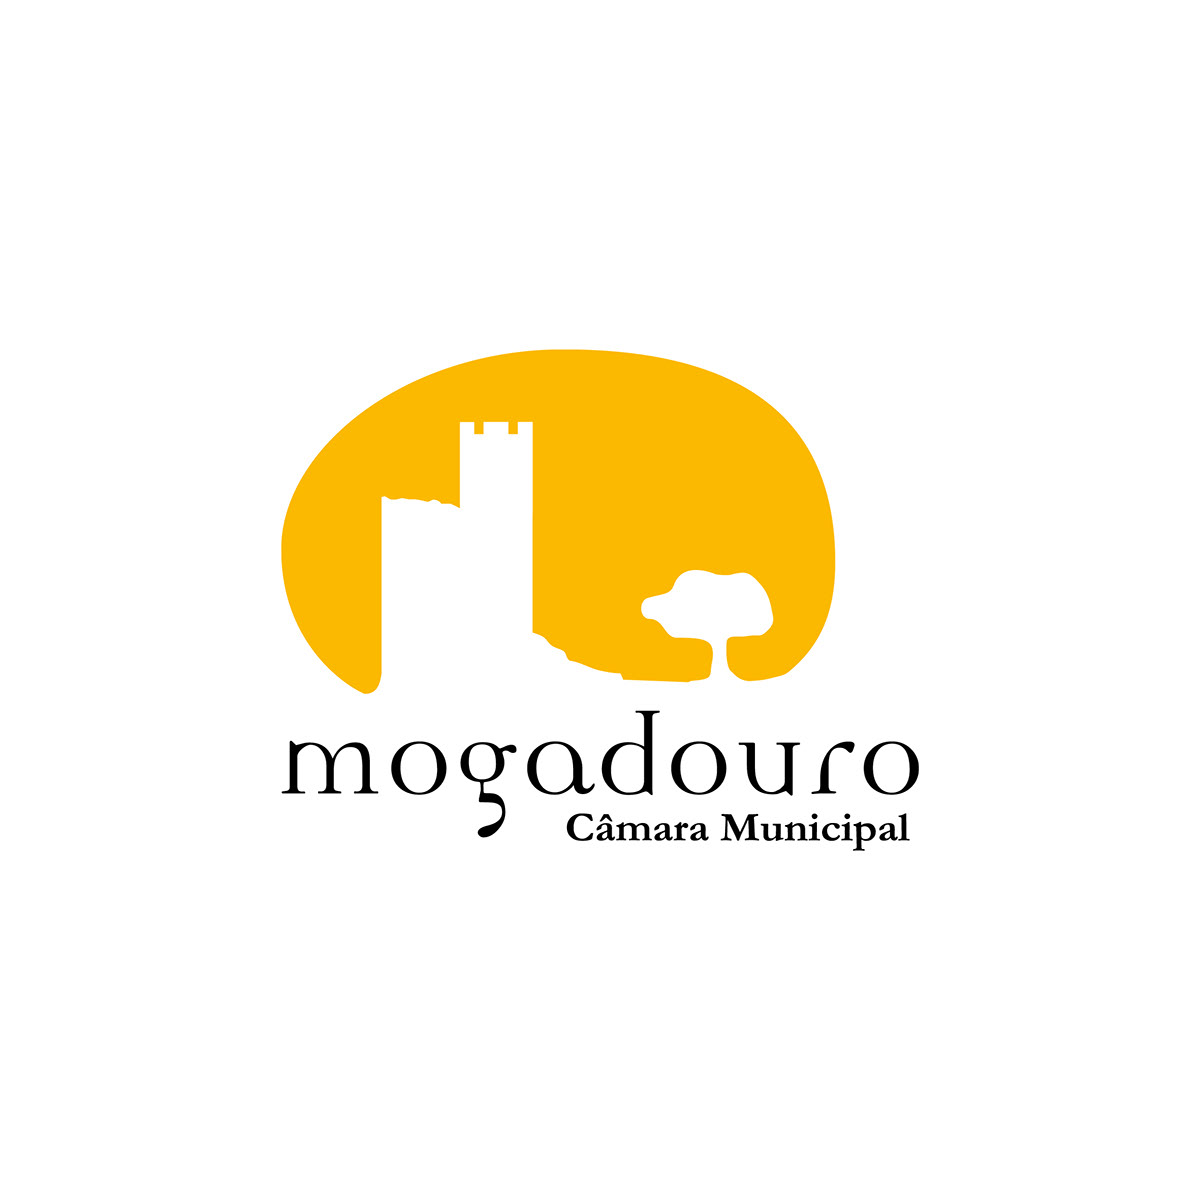 Mogadouro Village Council